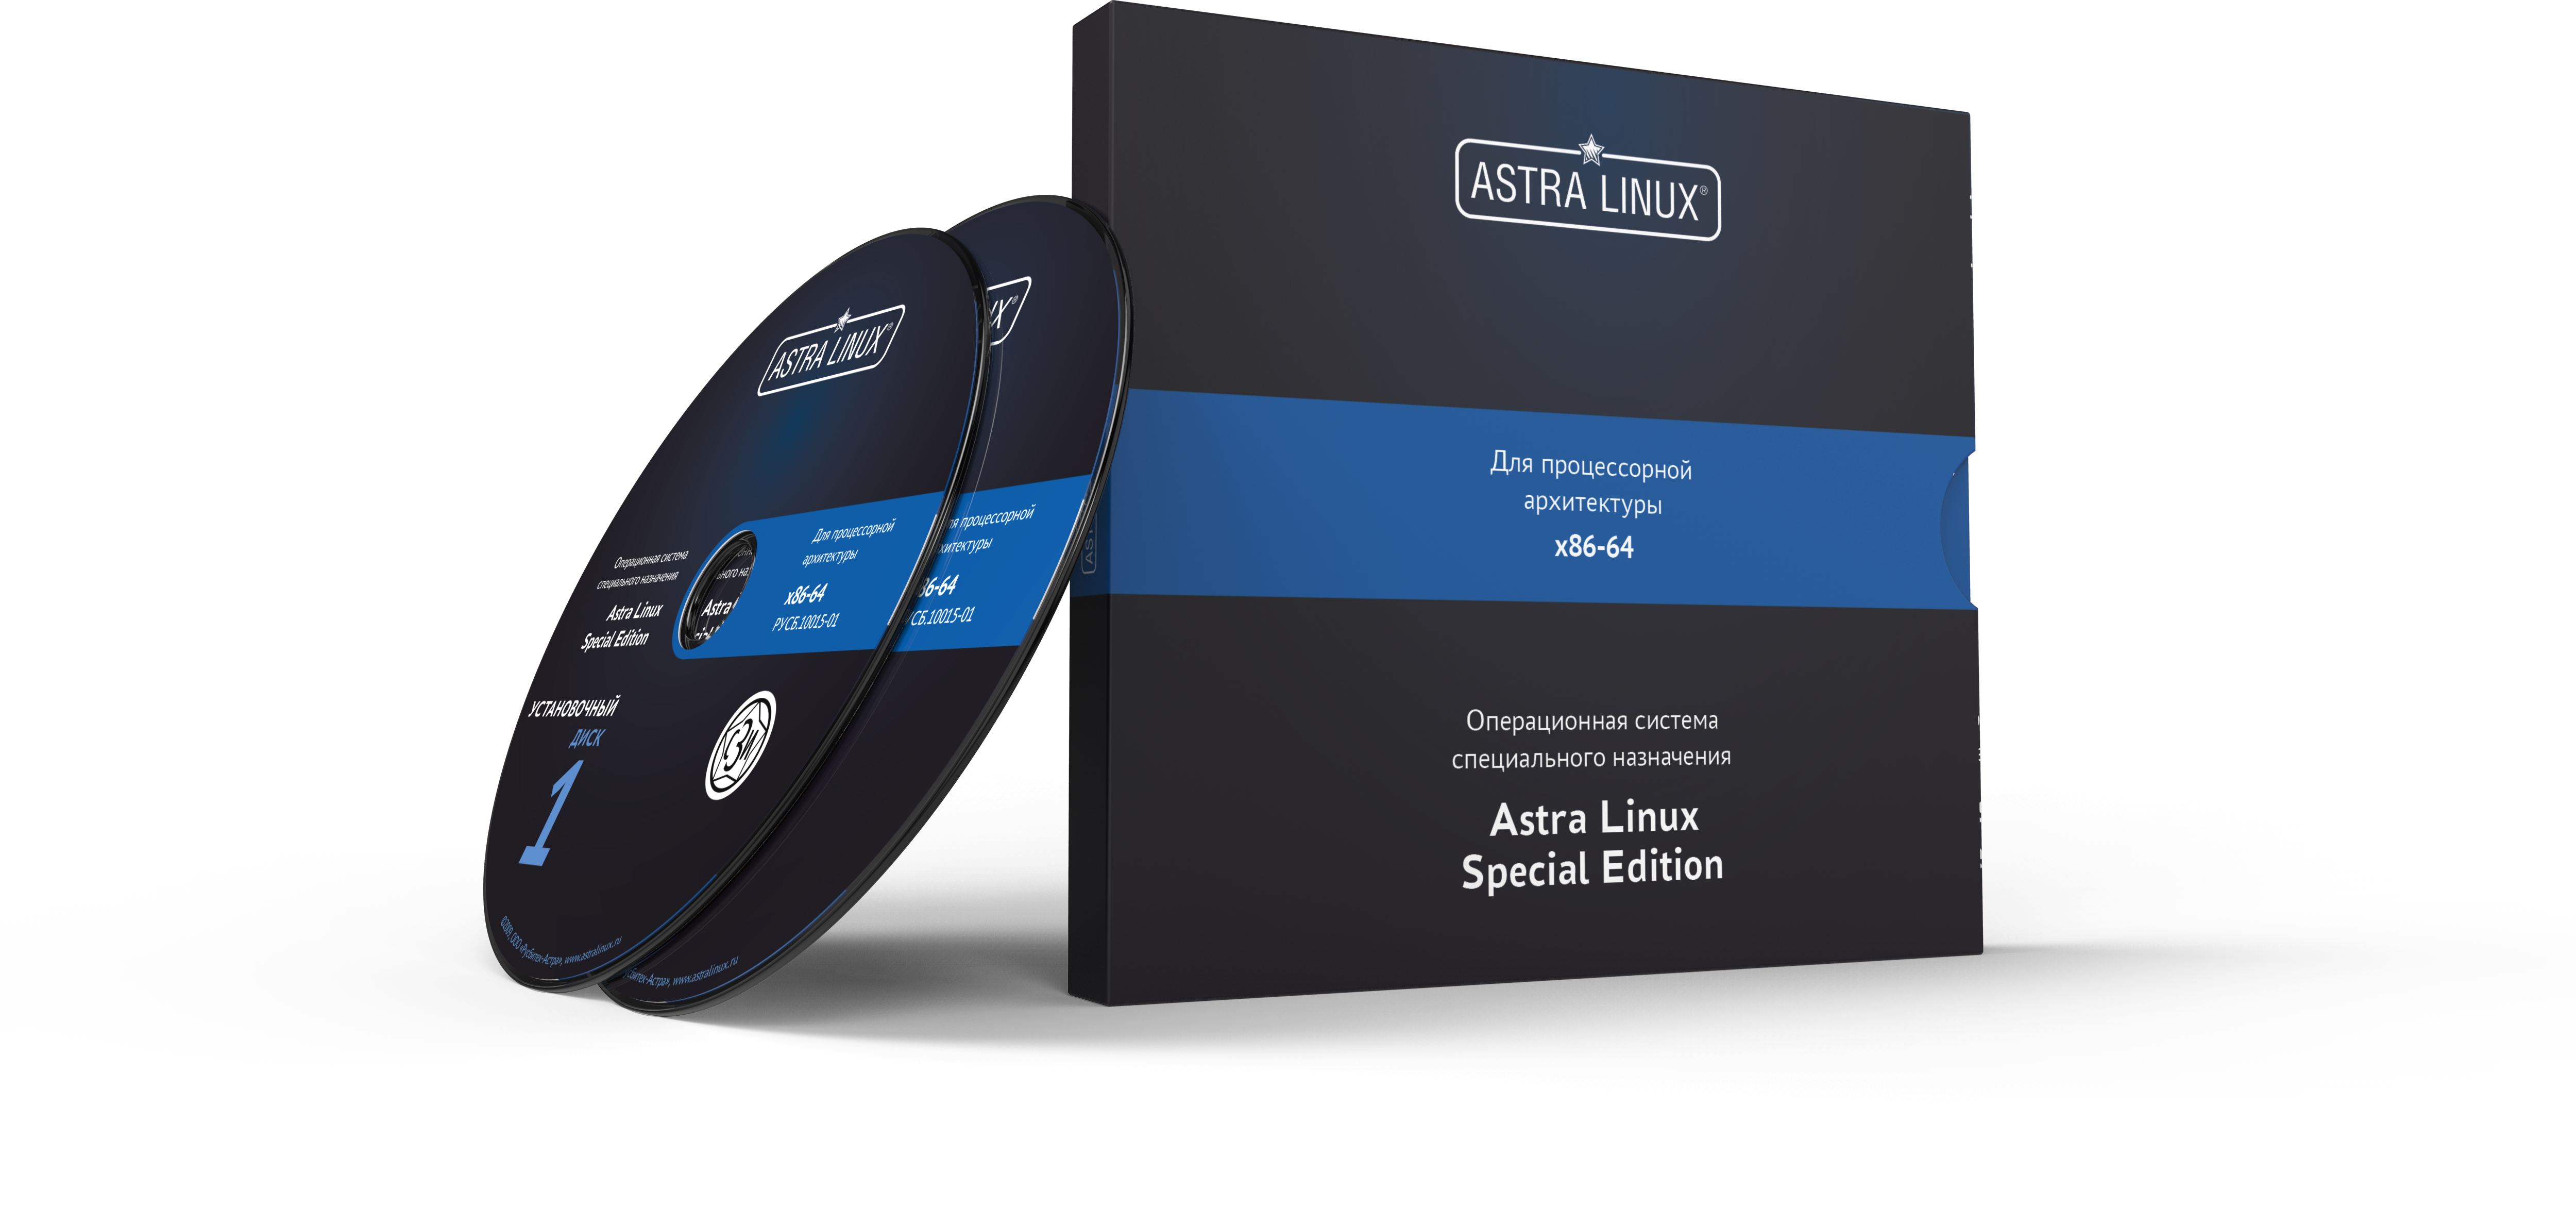 Astra Linux Special Edition 1.7 - Воронеж, РУСБ.10015-01 (ФСТЭК), без огр. срока, ТП "Привилегированная" 12 мес.